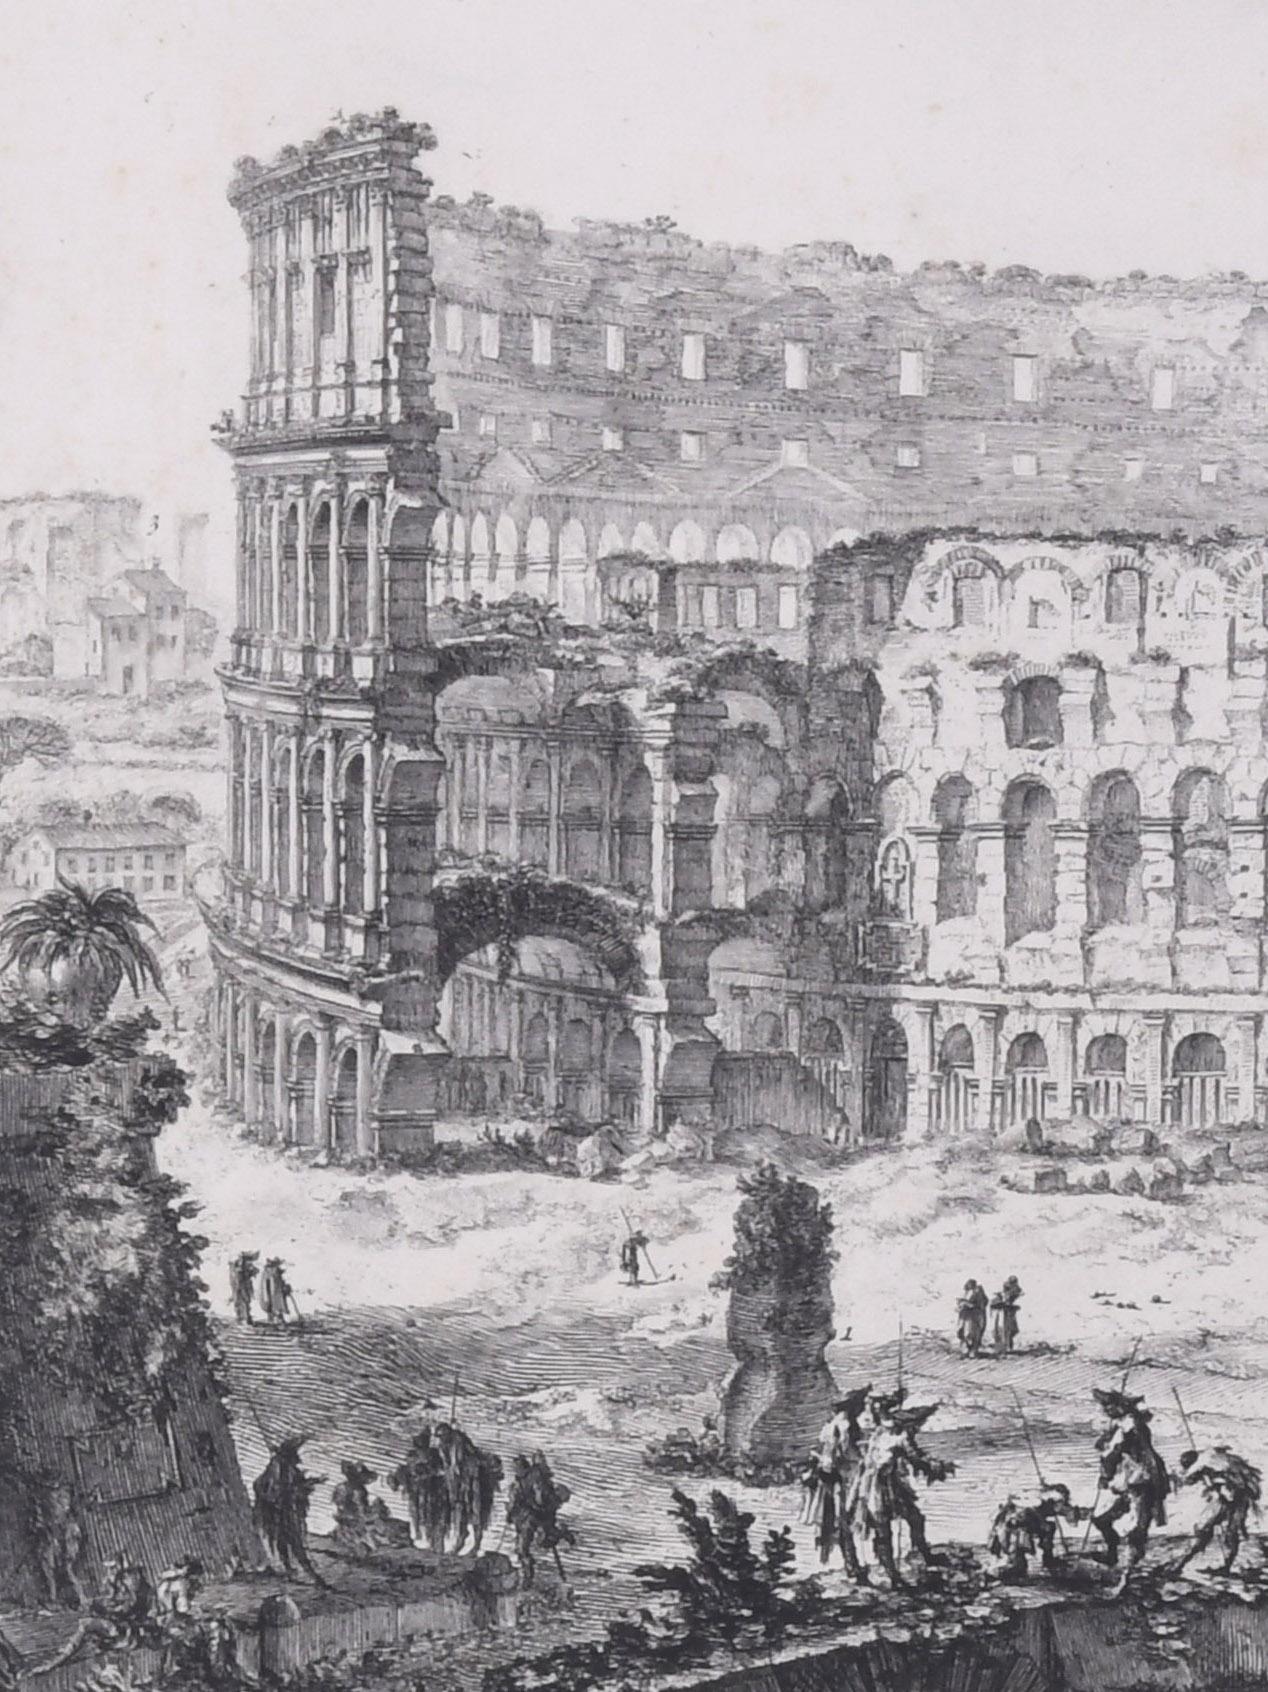 The Arch of Constantine and the Colosseum
Vedute dell' Arco di Costantino, e dell' Anfiteatro Flavio il Colosseo
From: 